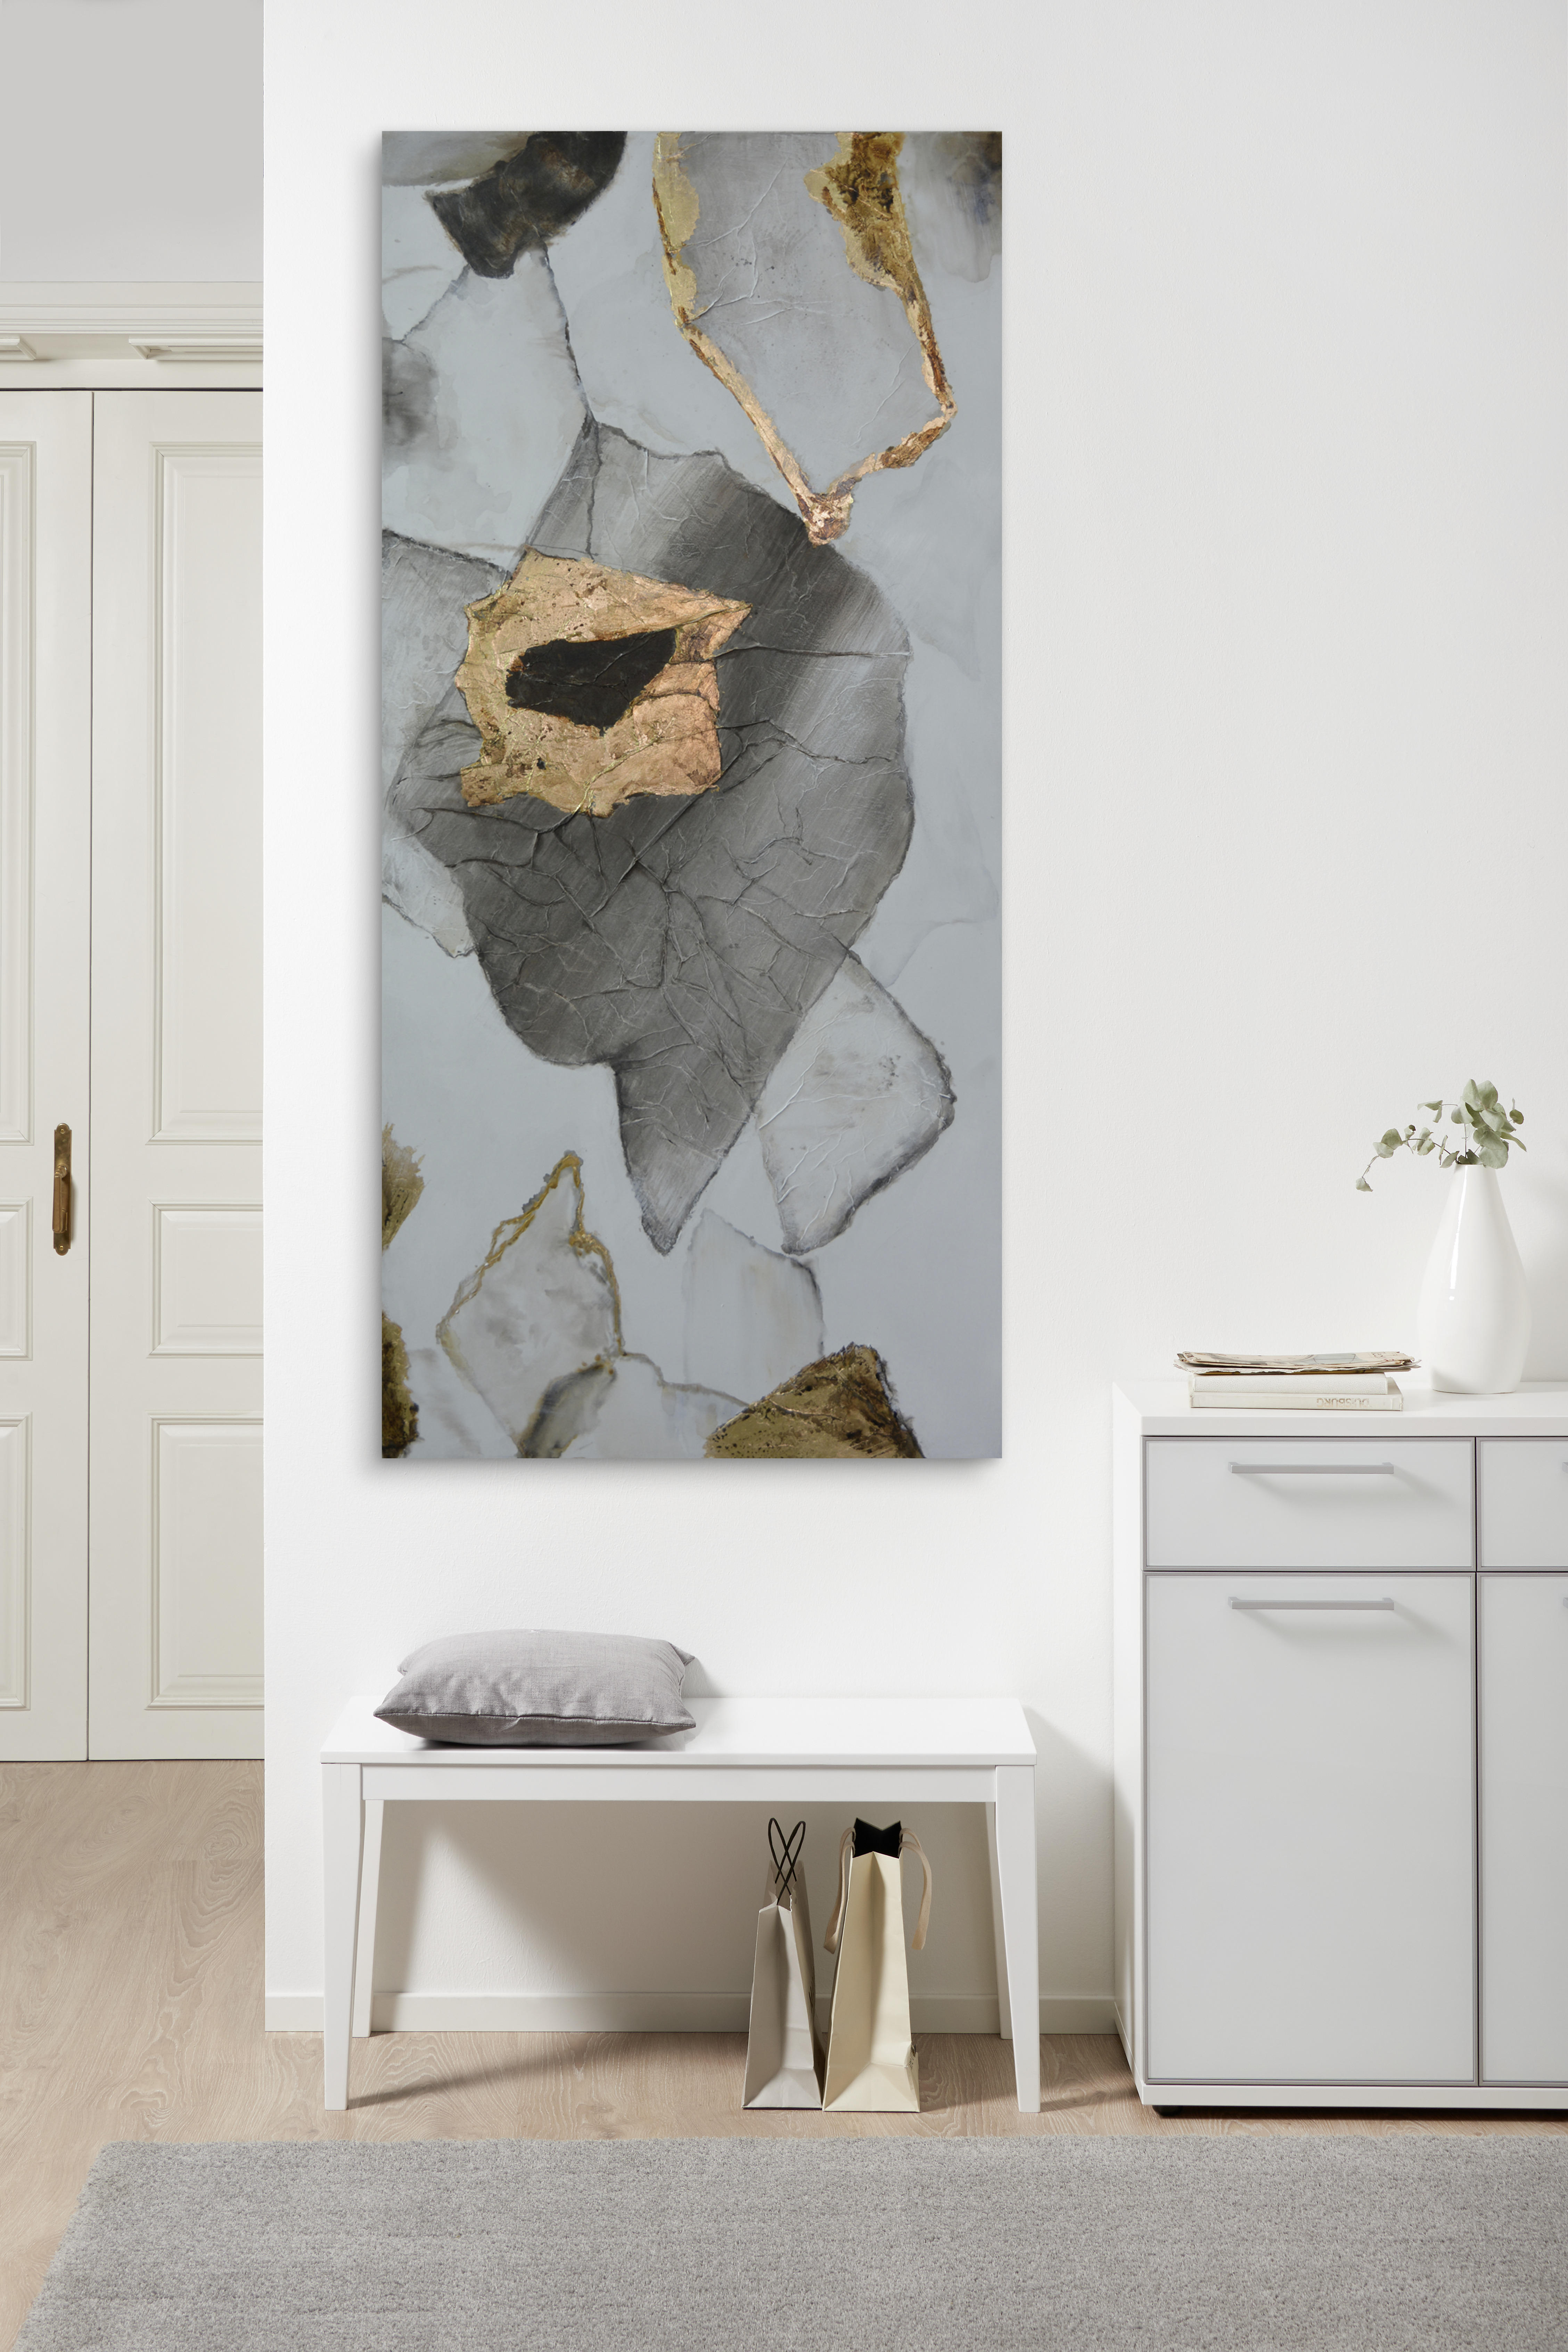 OLEJOMAĽBA, abstraktné, 150/70 cm  - hnedá/sivá, Trend, drevo/textil (150/70cm) - Monee